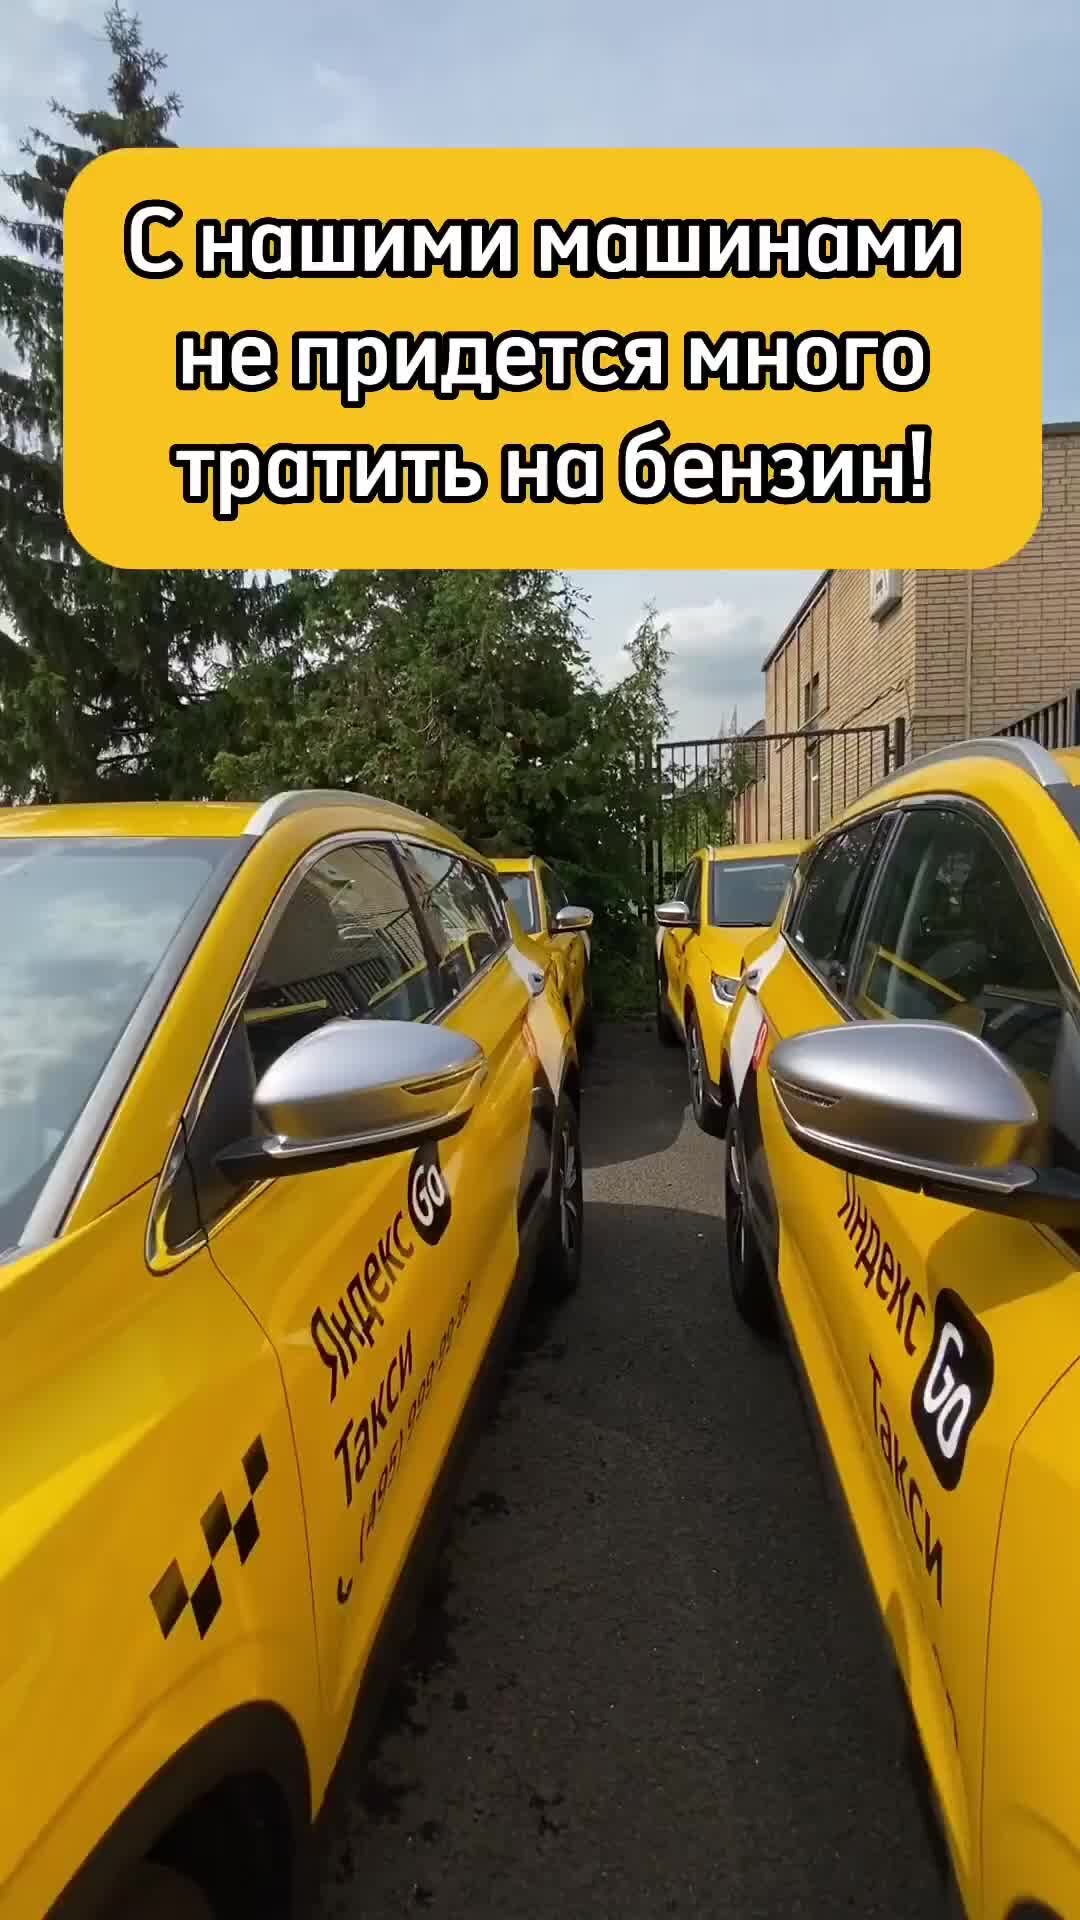 Такси 495. Такси 495 ул. Василия Петушкова, 3с1, Москва фото.